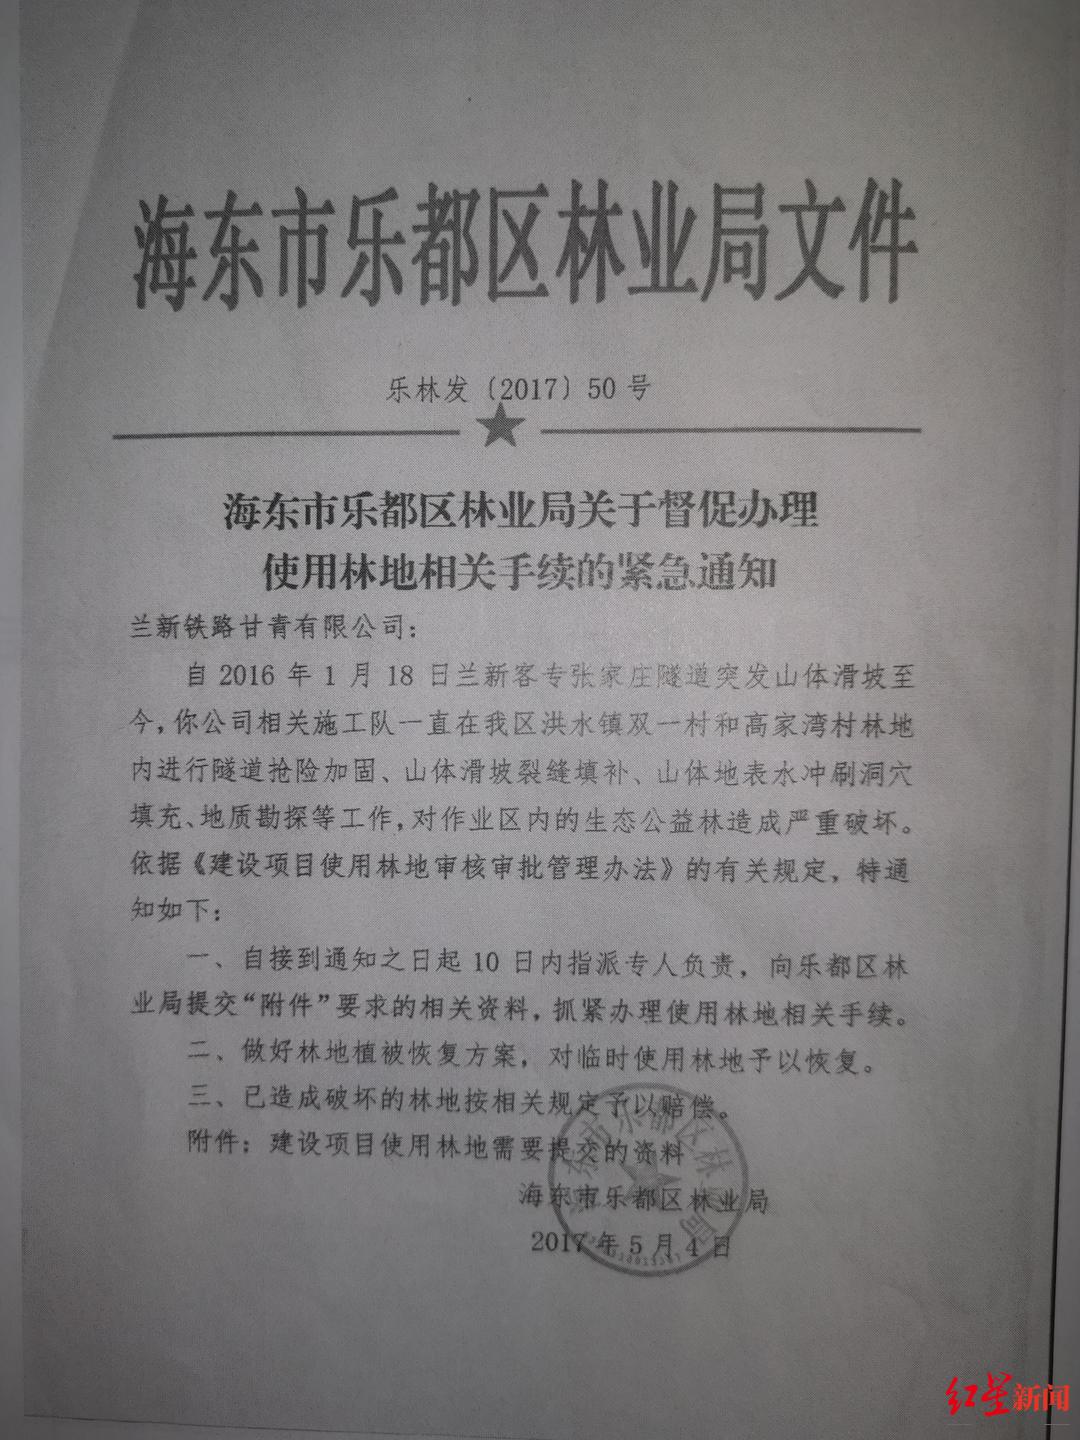 ▲海东市乐都区林业局于2017年5月向甘青公司发送的相关通知。 红星新闻记者 刘木木 摄